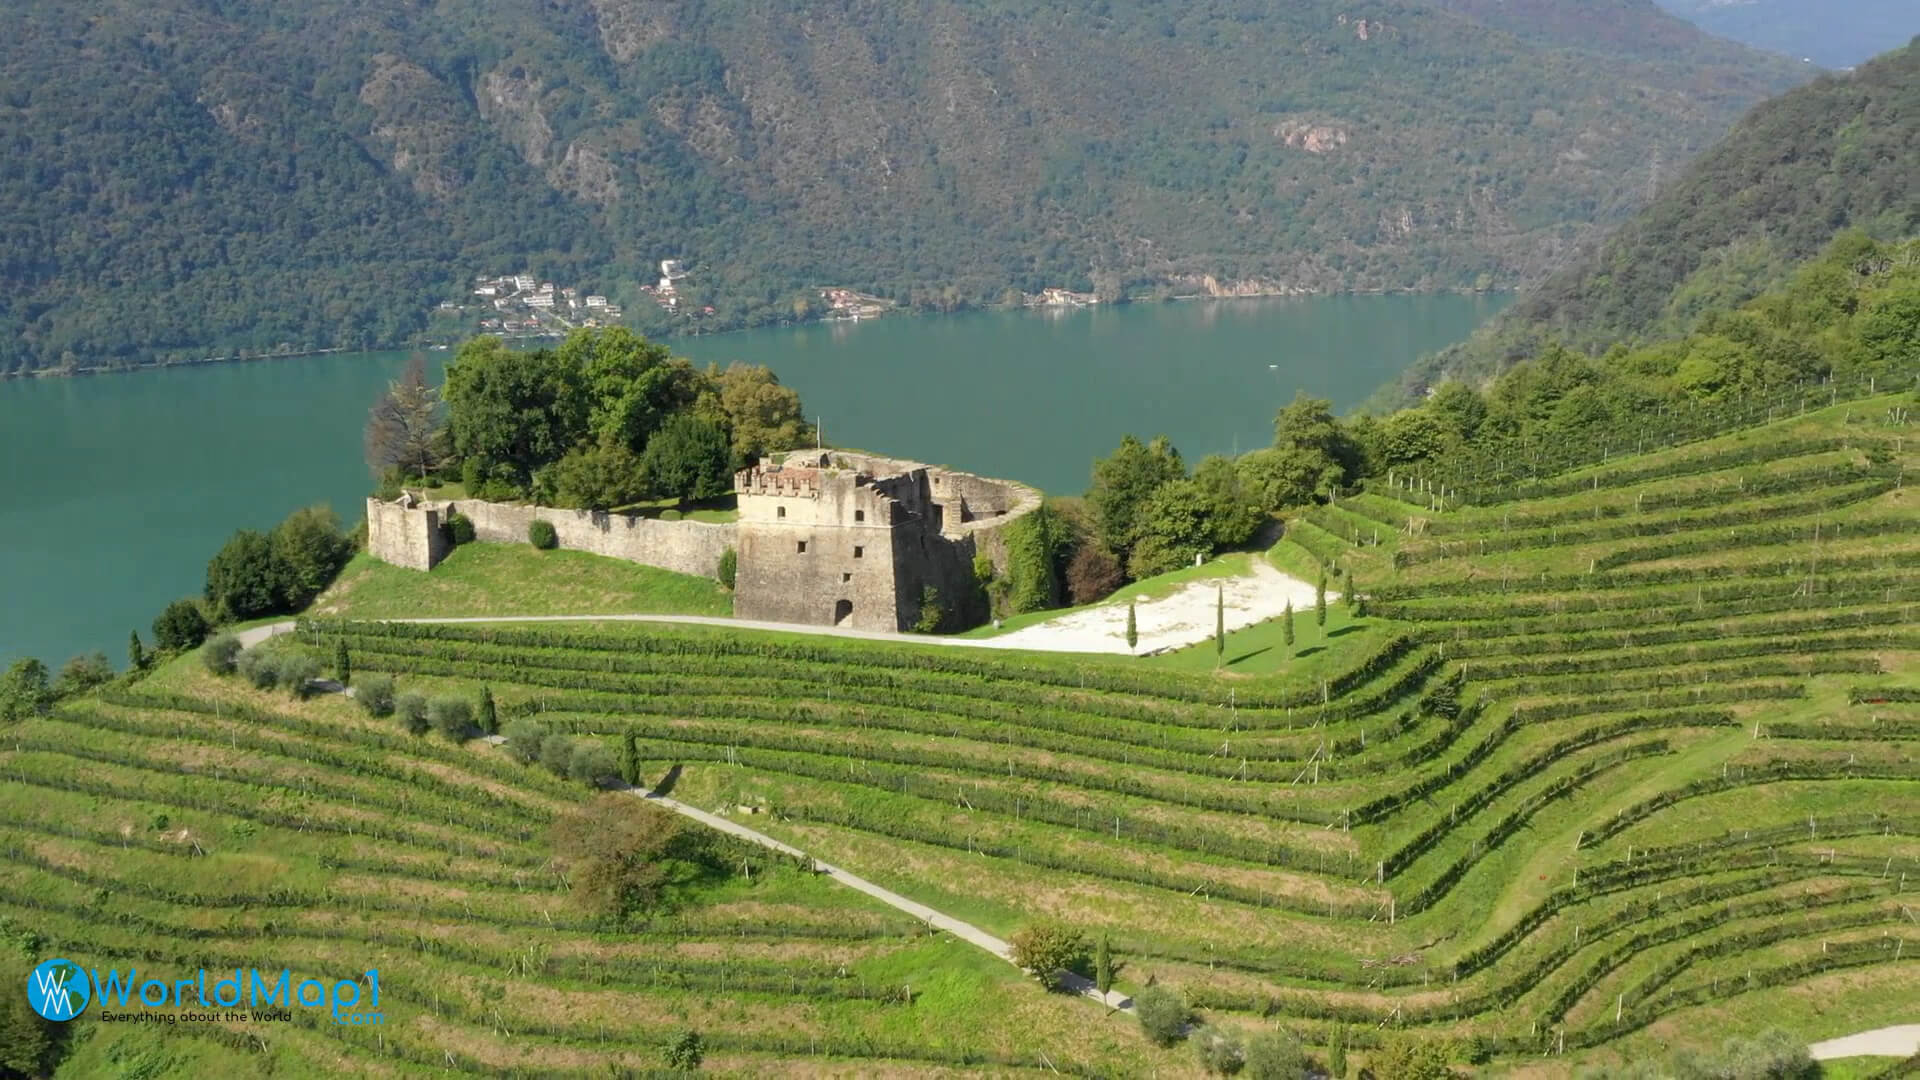 Historical Castle amd Vimeyards Above Lugano Lake